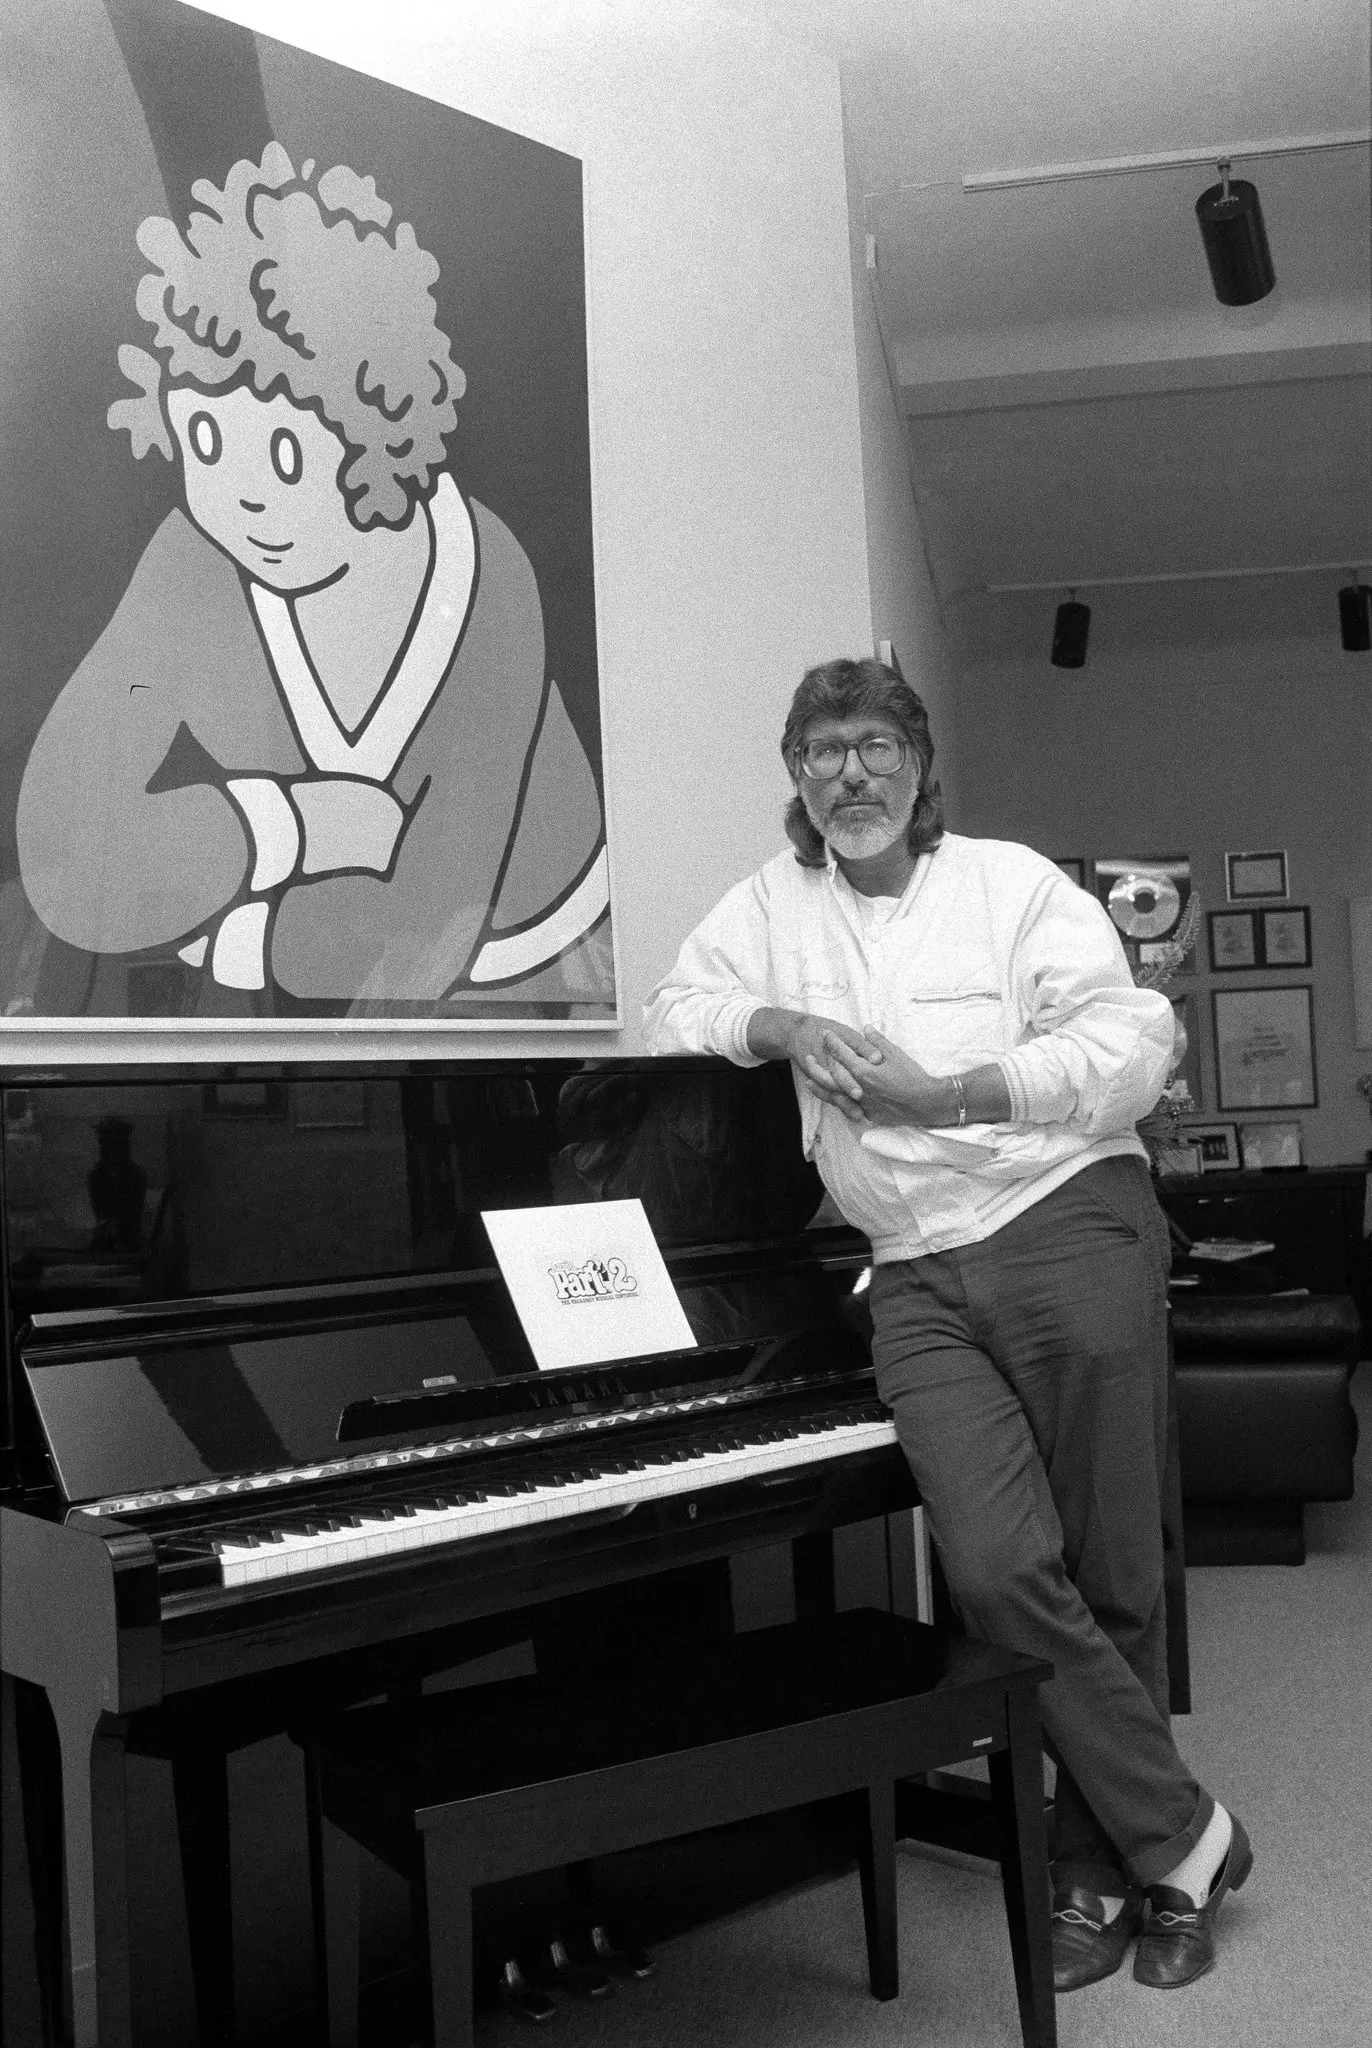 Martin Charnin em seu escritório em Manhattan em 1983. Na parede há uma pintura da pequena órfã Annie, a personagem de história em quadrinhos que inspirou “Annie”, o longa musical da Broadway que Charnin concebeu e dirigiu e para o qual escreveu a letra. (Crédito: Keith Meyers/The New York Times)